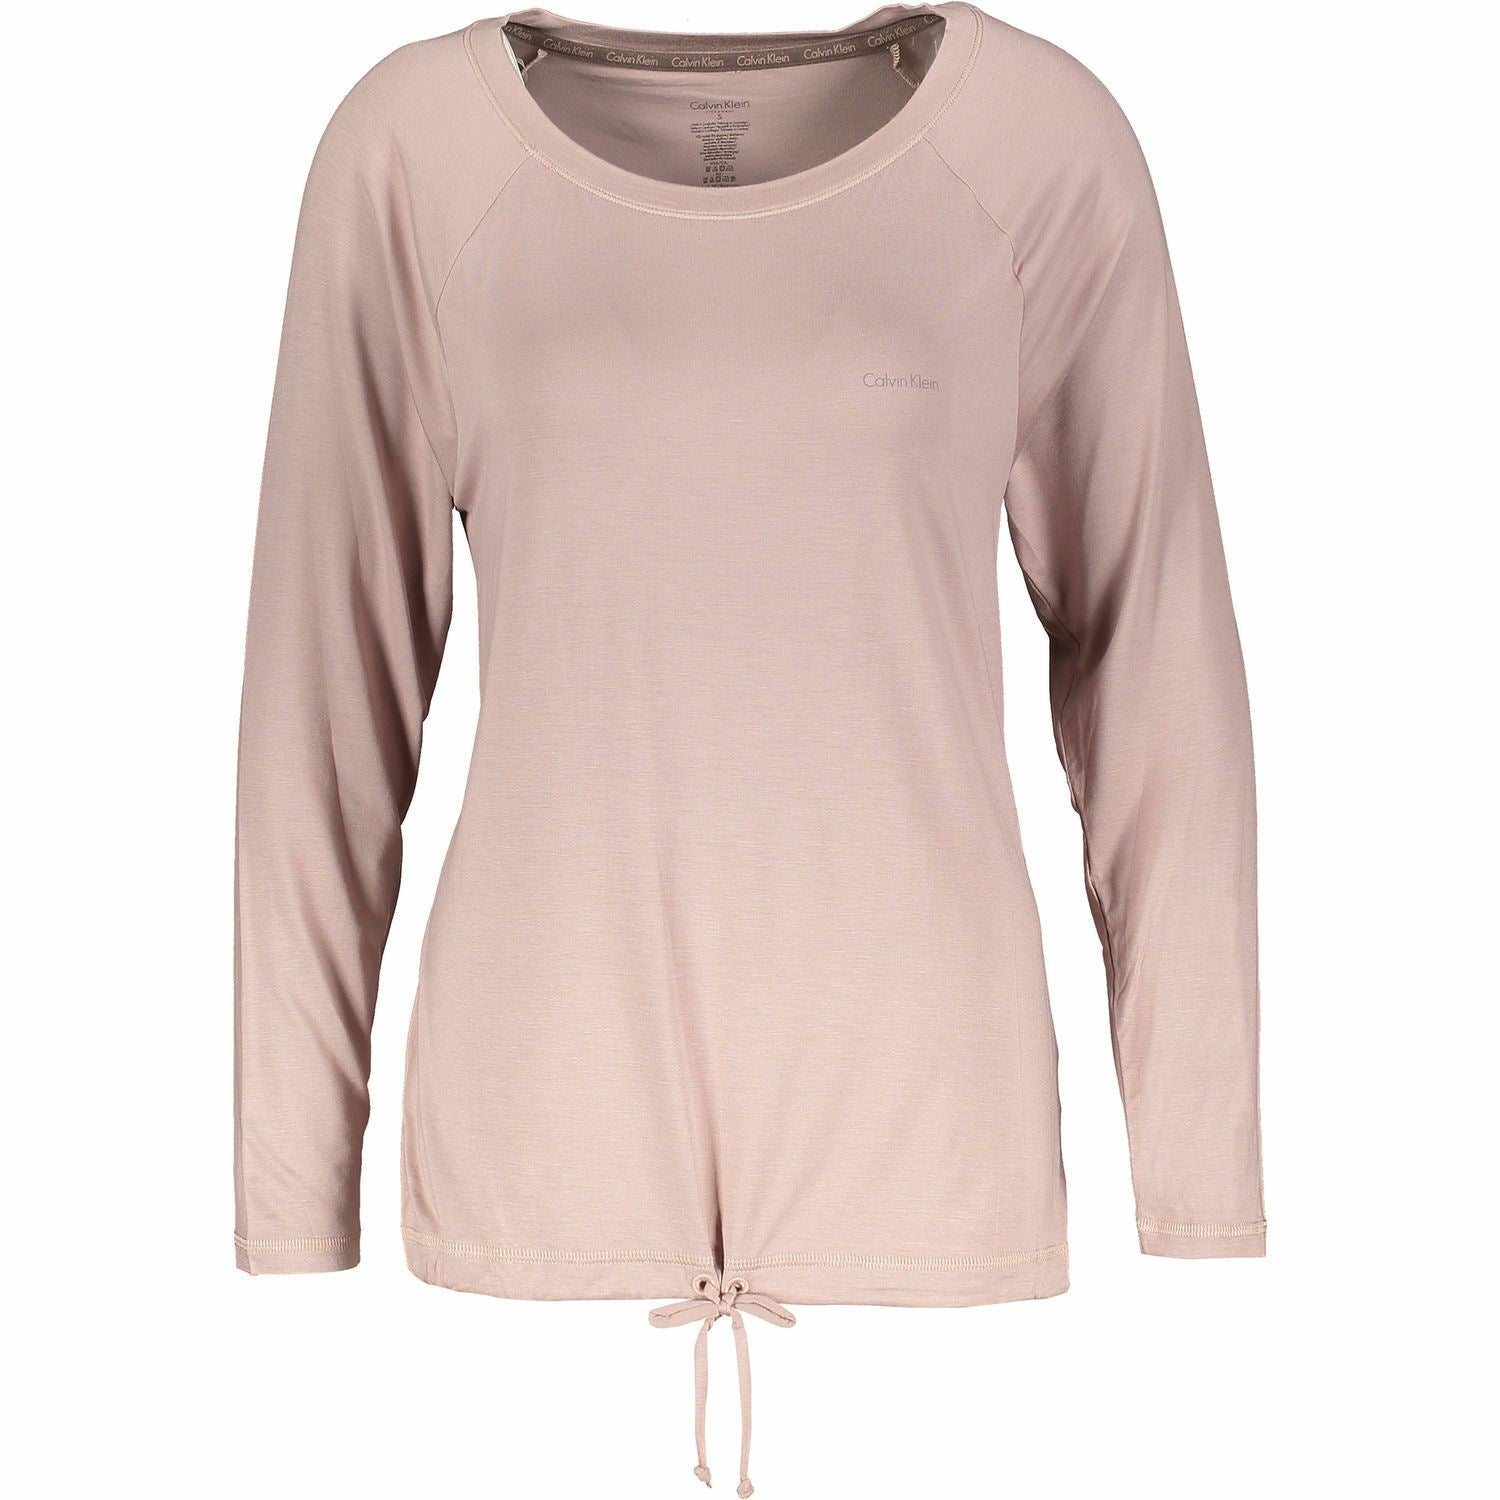 CALVIN KLEIN Long Sleeve Sleepwear Nightwear Womens Top, size S /size M